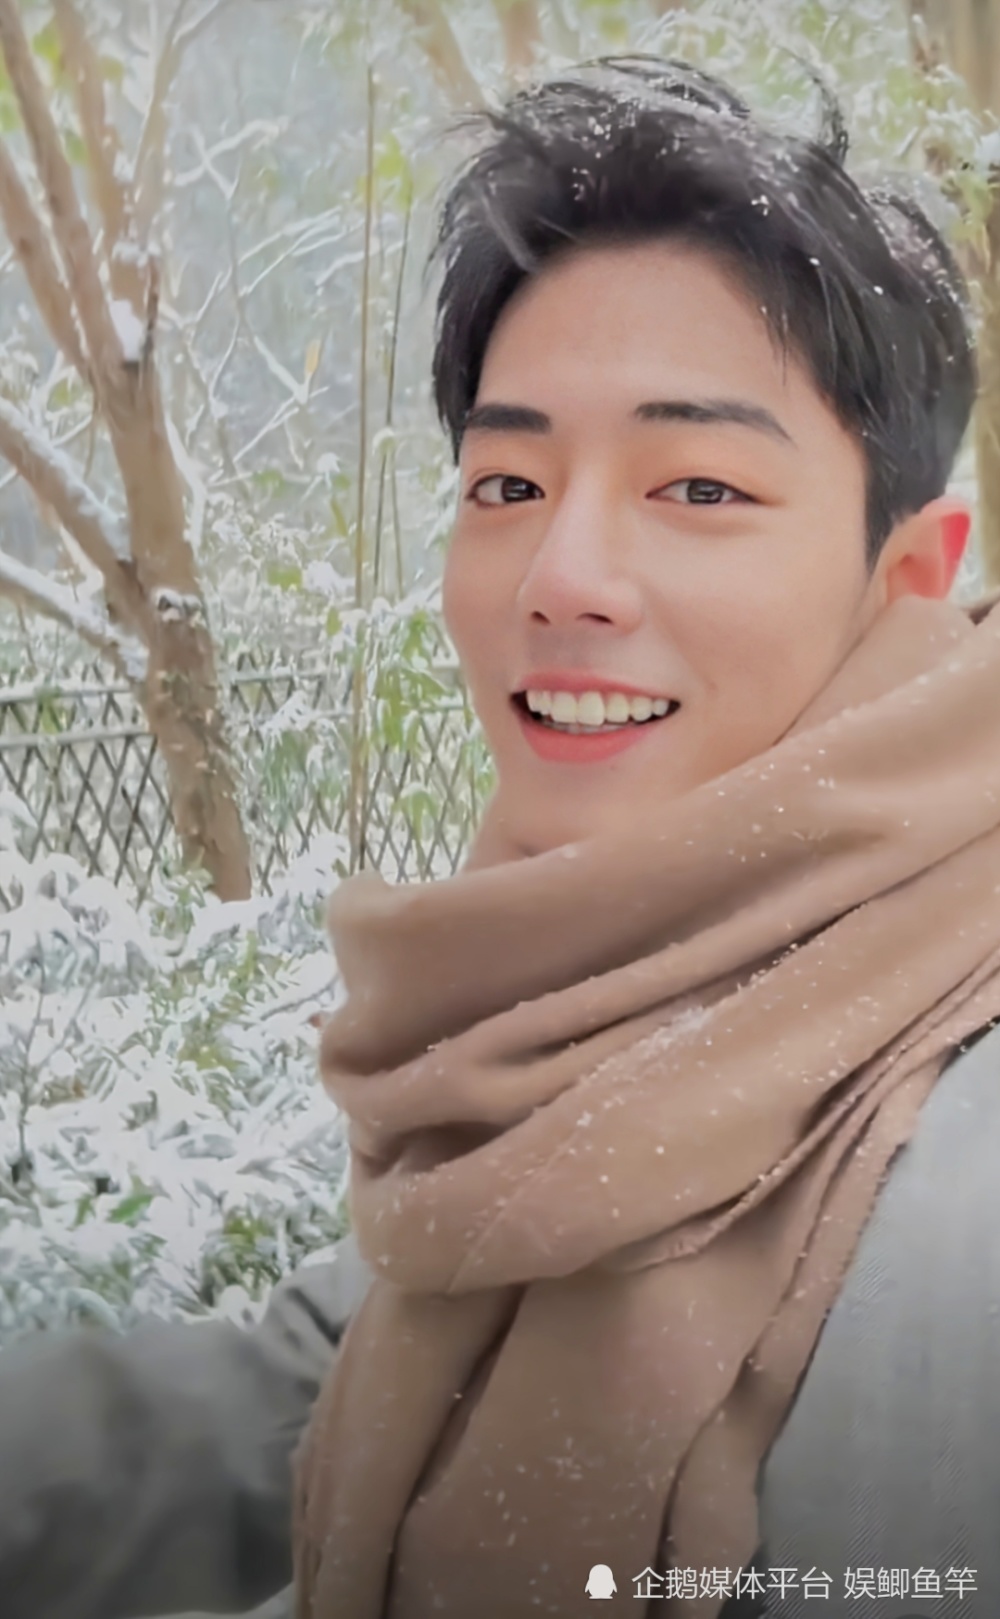 肖战新自拍视频,撑着伞漫步雪中,微微一笑很倾城!